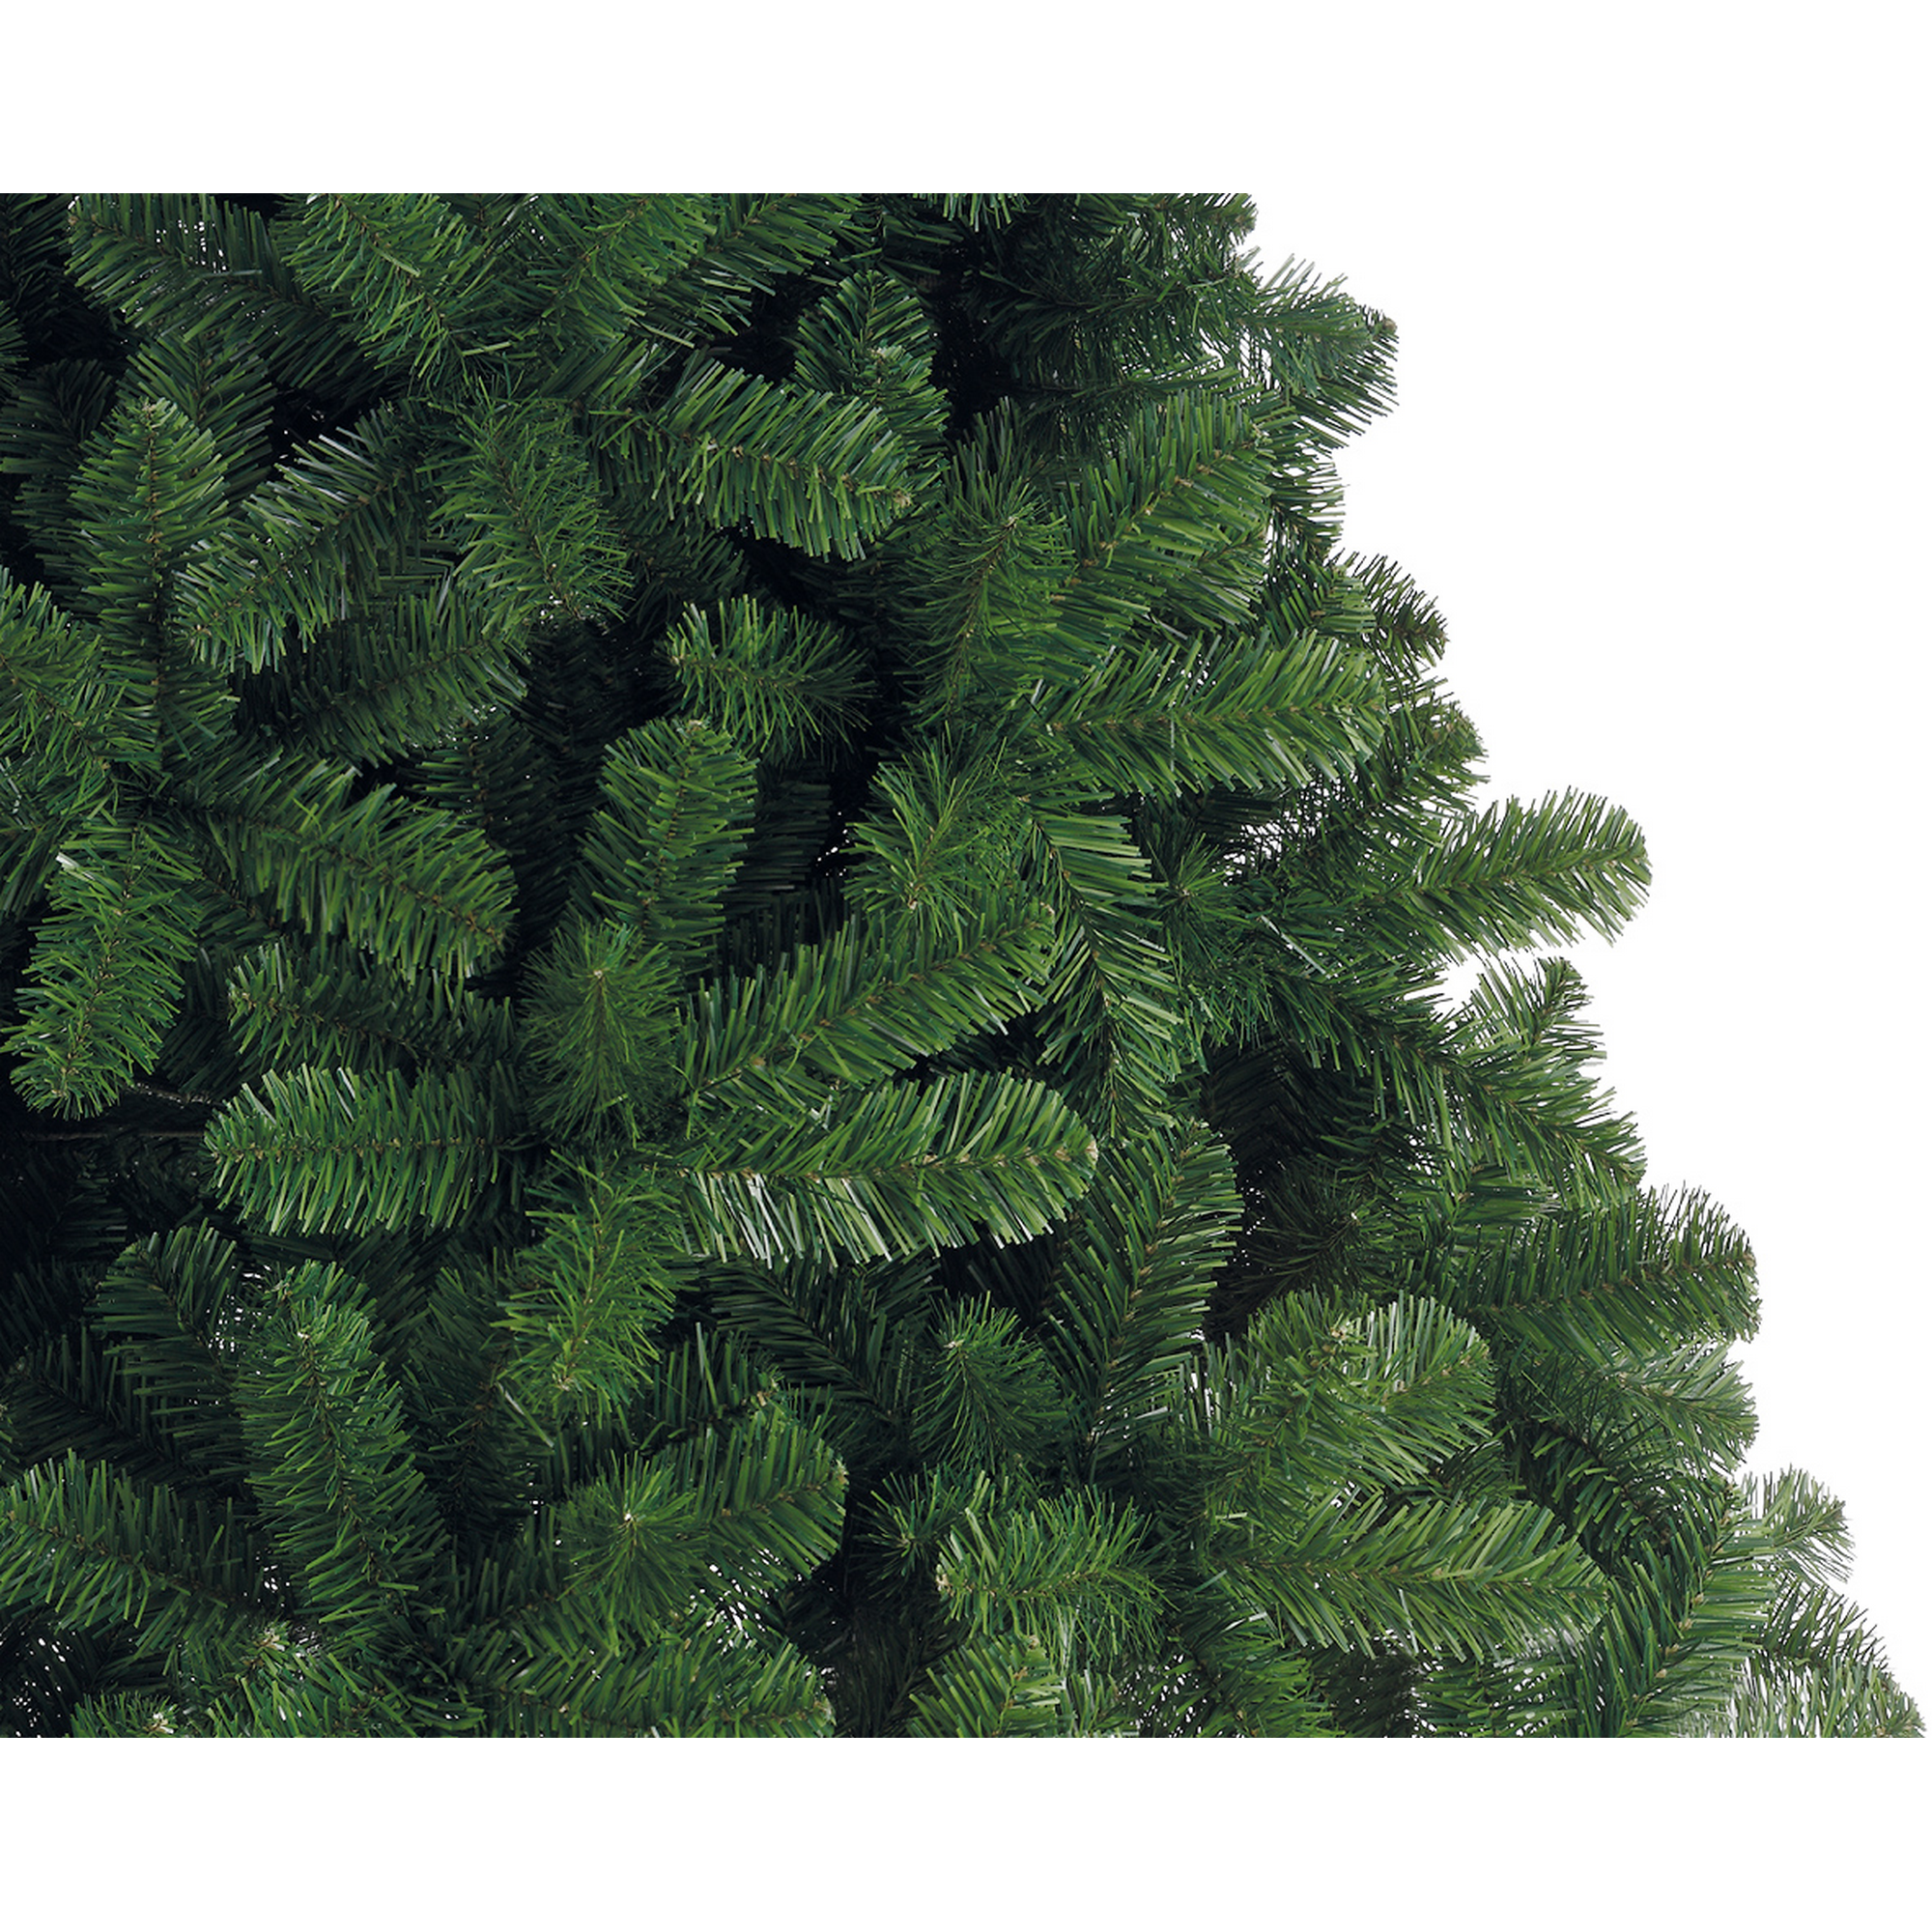 Künstlicher Weihnachtsbaum 'Imperial' grün 120 cm + product picture